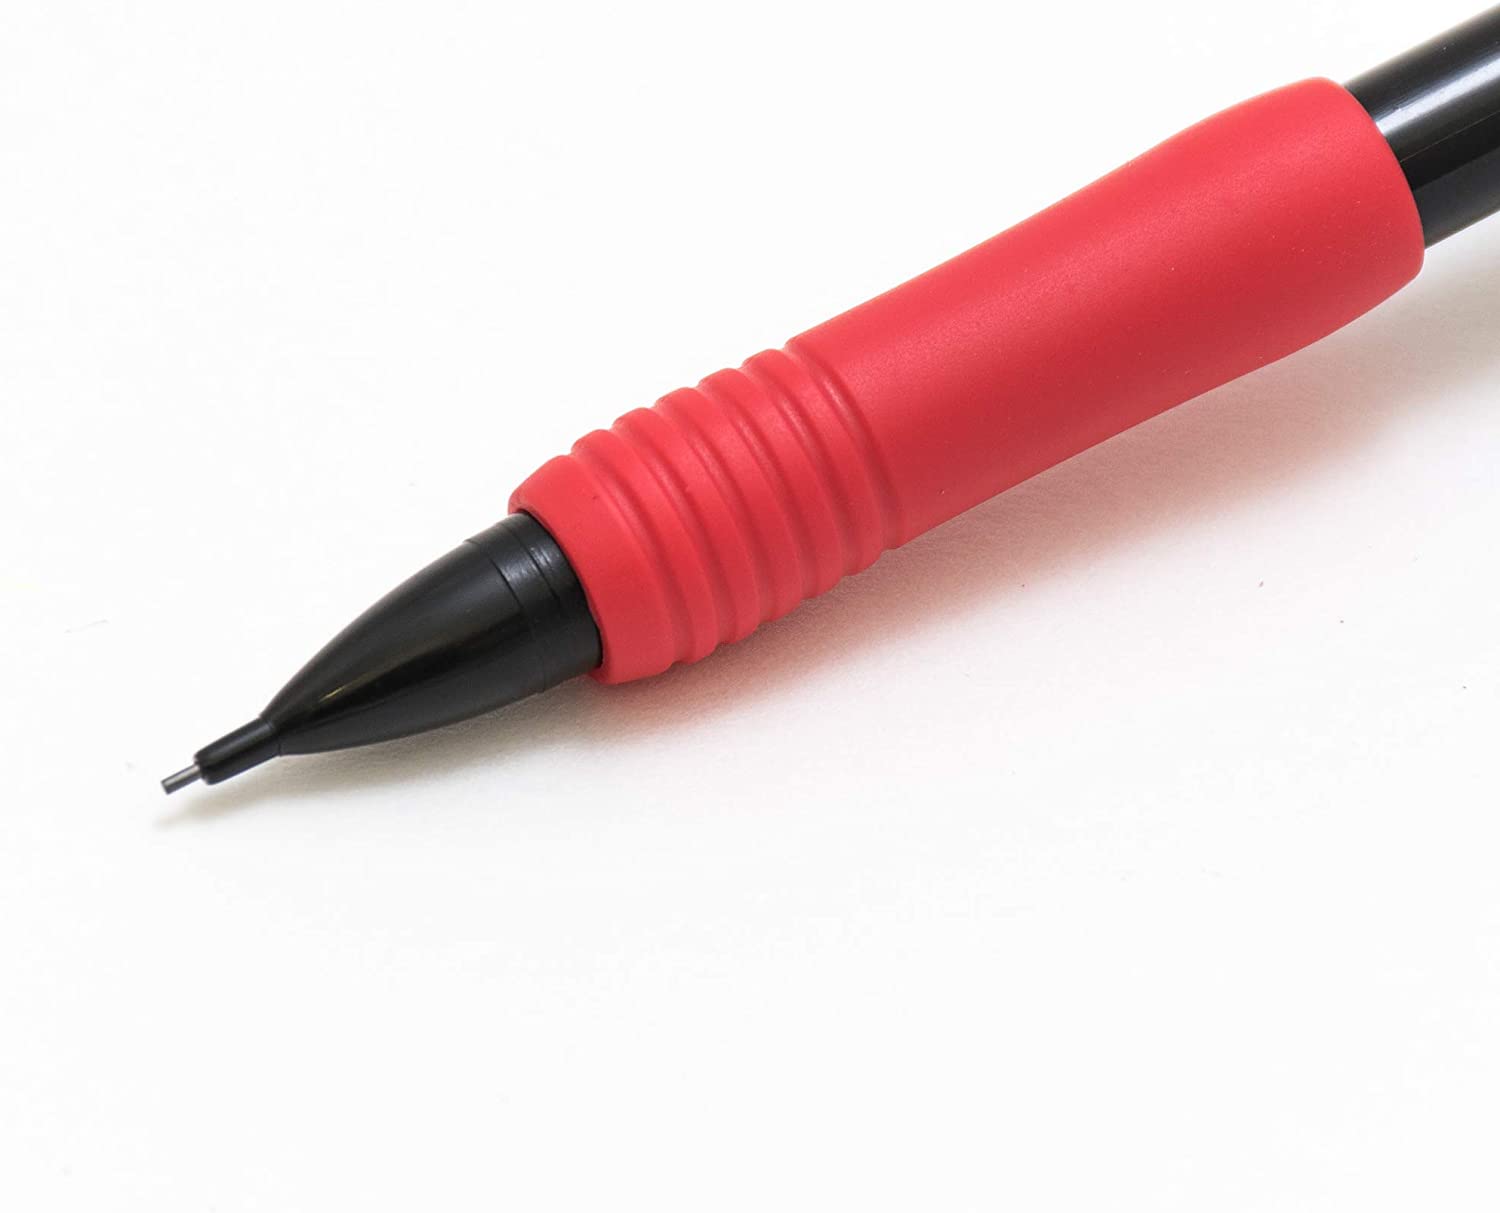 Lapiseira 0.7mm Pen+Gear